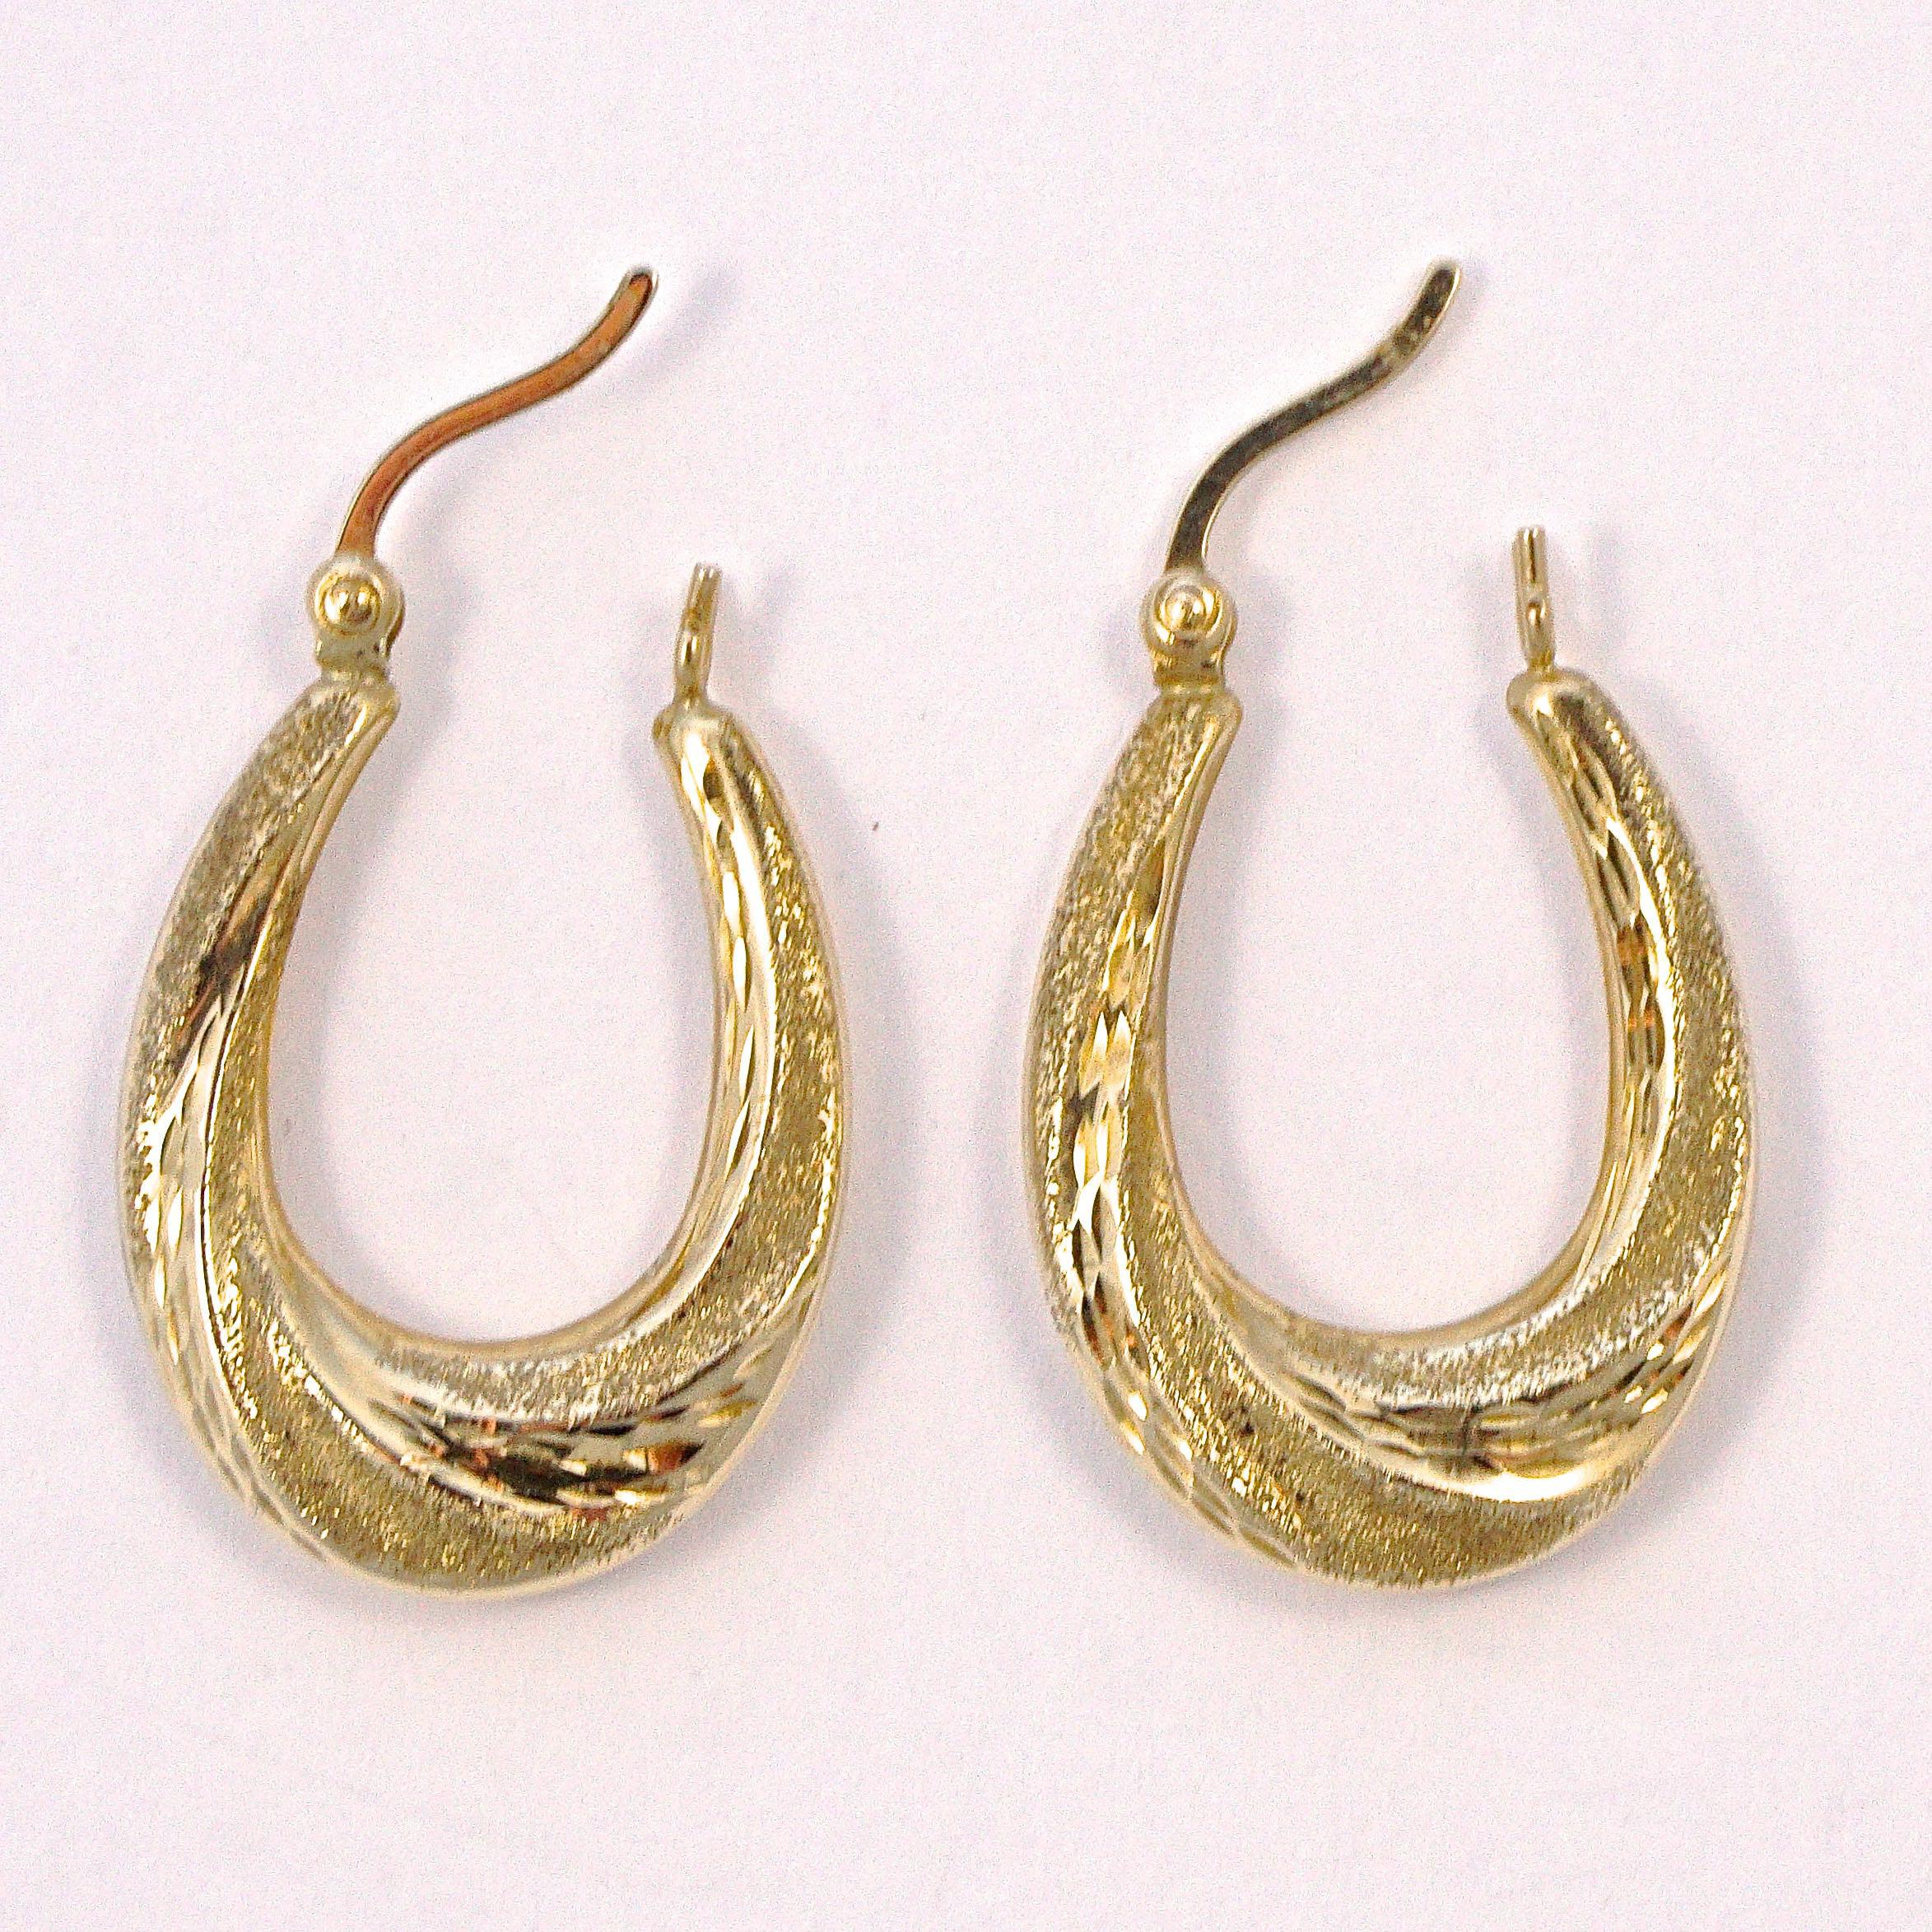 9ct gold oval hoop earrings